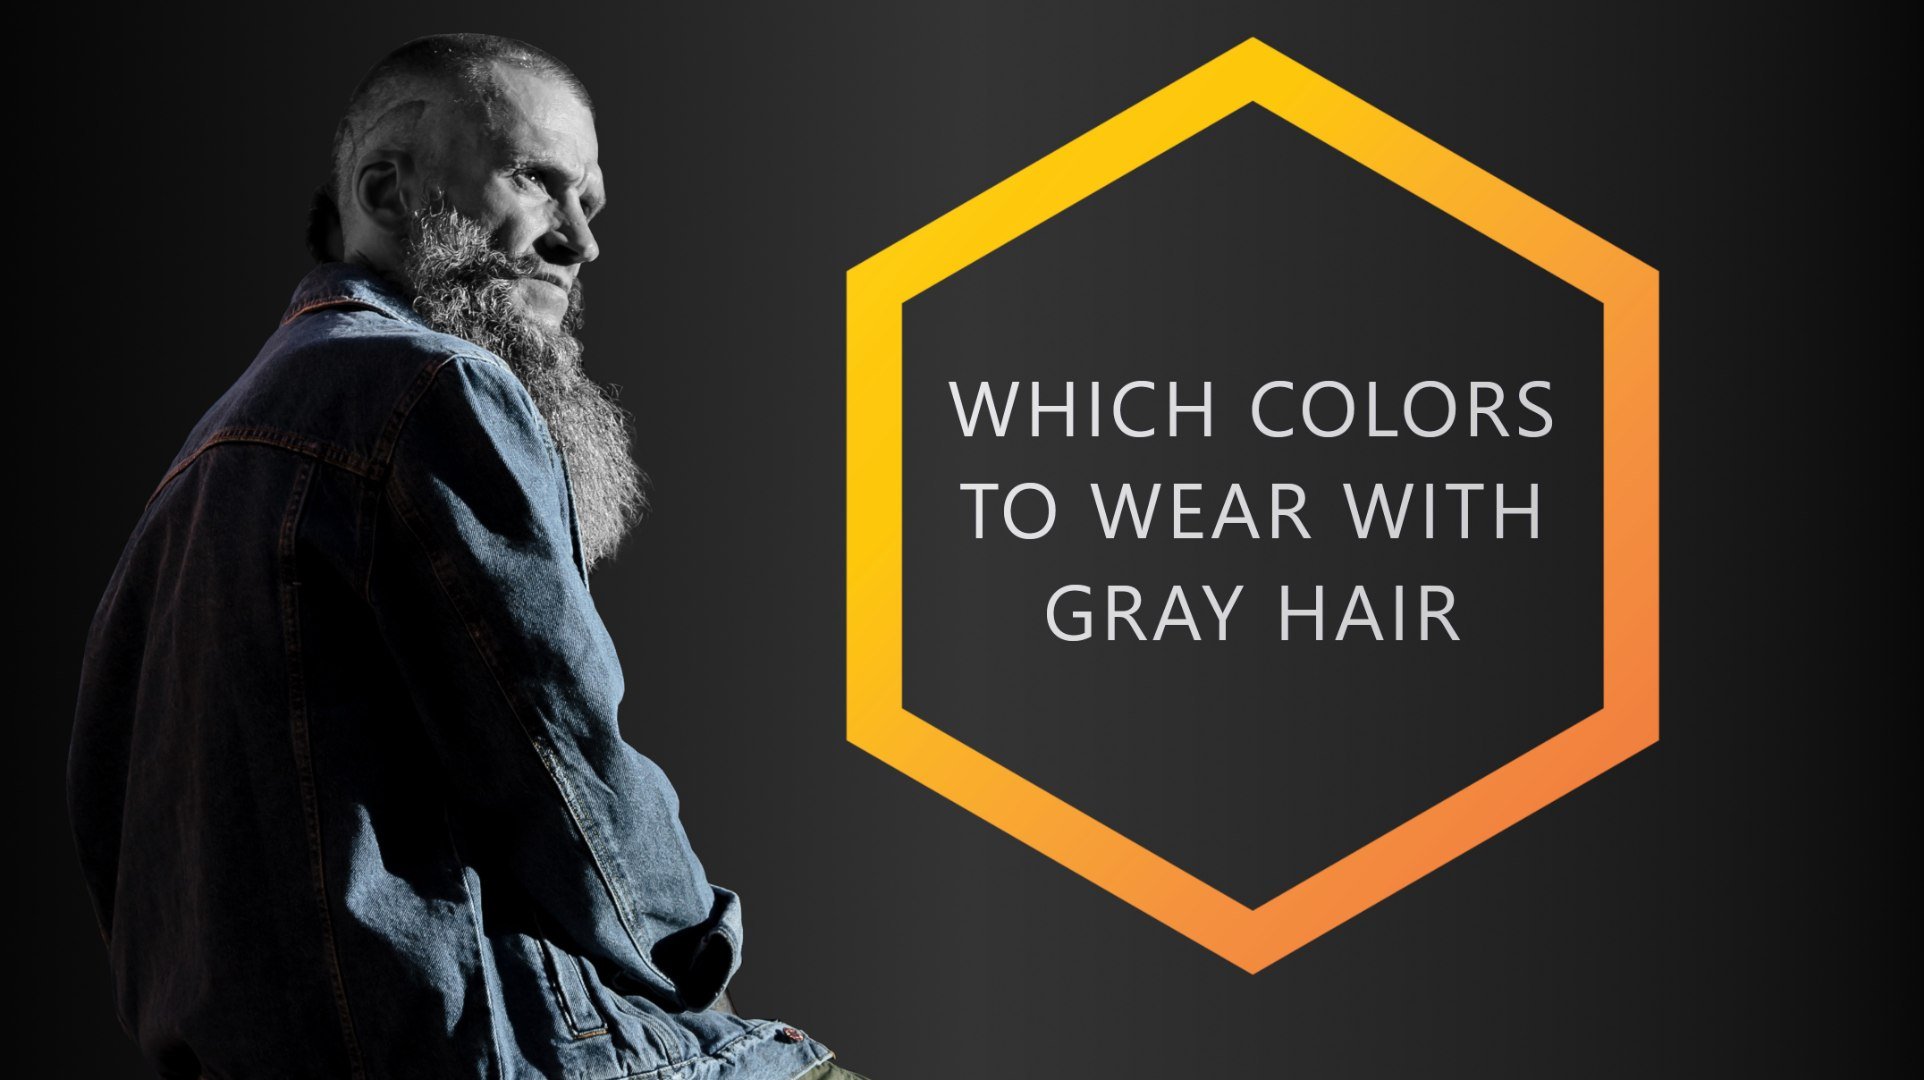 5. "Fashion Ideas for Dark Grey Hair and Blue Eyes" - wide 7